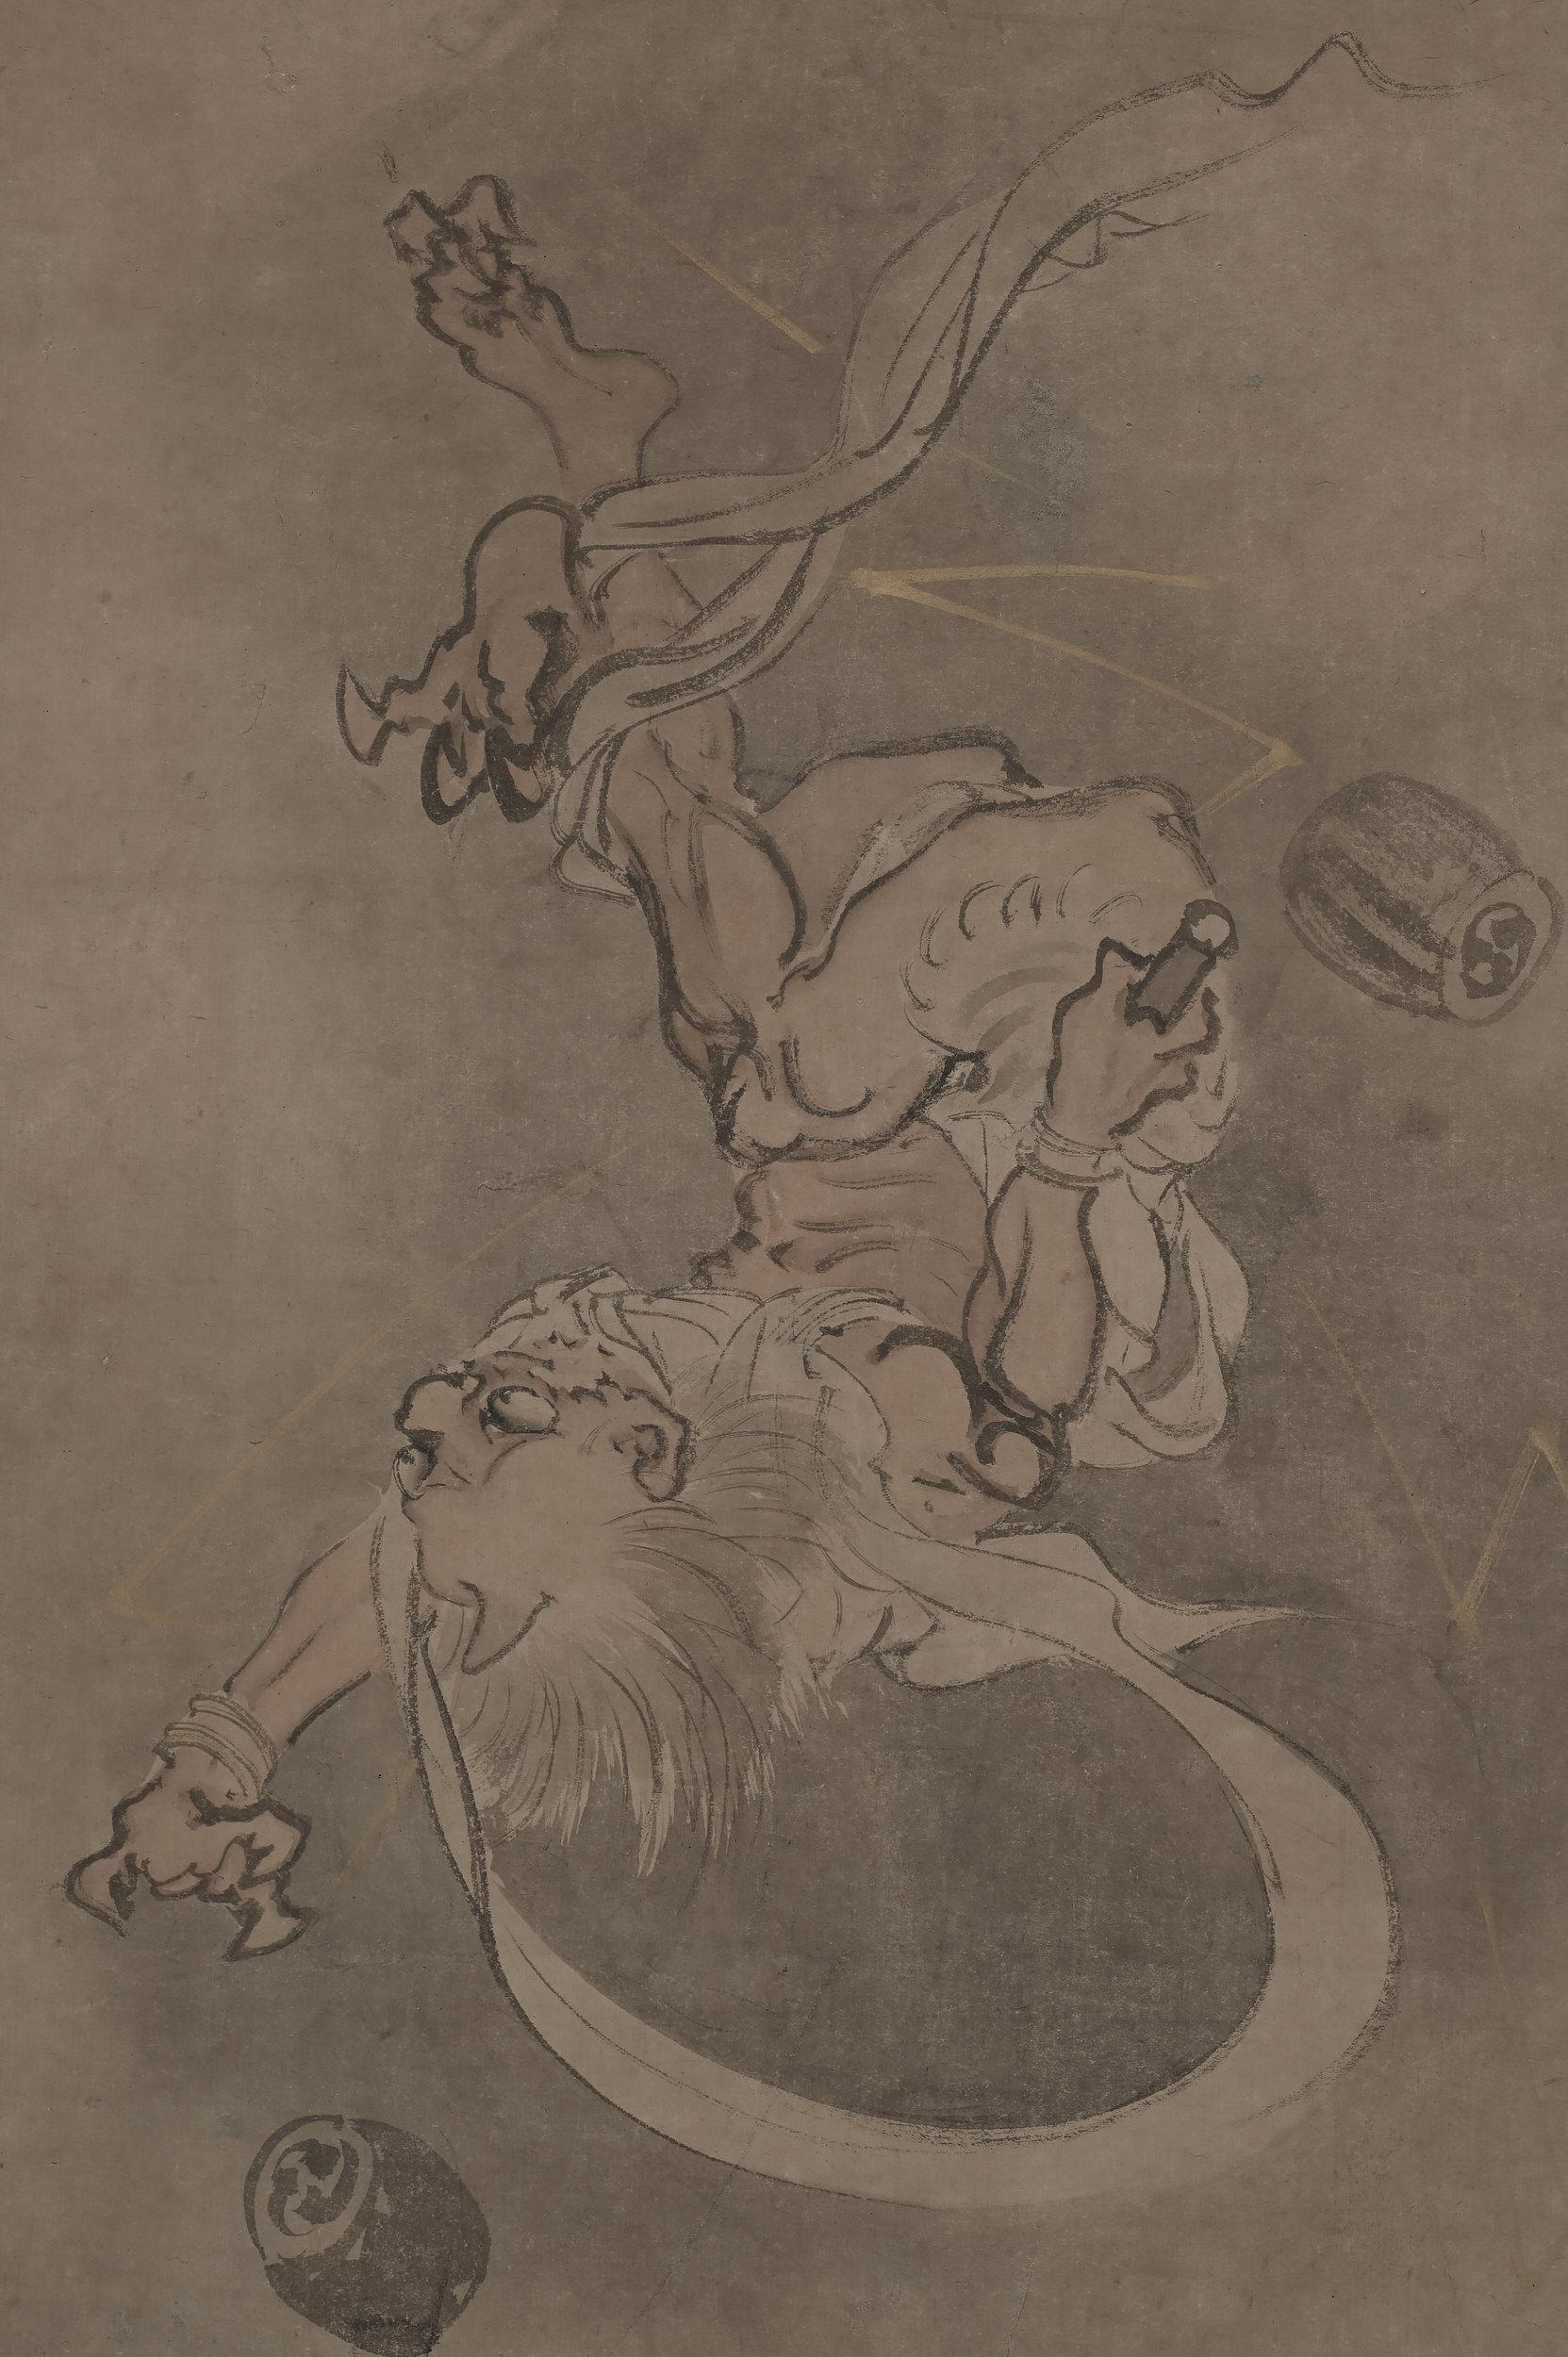 Raijin - Dieu du tonnerre

Yamaguchi Soken (1759-1818)

Milieu ou fin de la période Edo, vers 1800.

Peinture encadrée. Encre et couleur claire sur papier.

Cette peinture humoristique représente le dieu du tonnerre, Raijin, tombant du ciel,